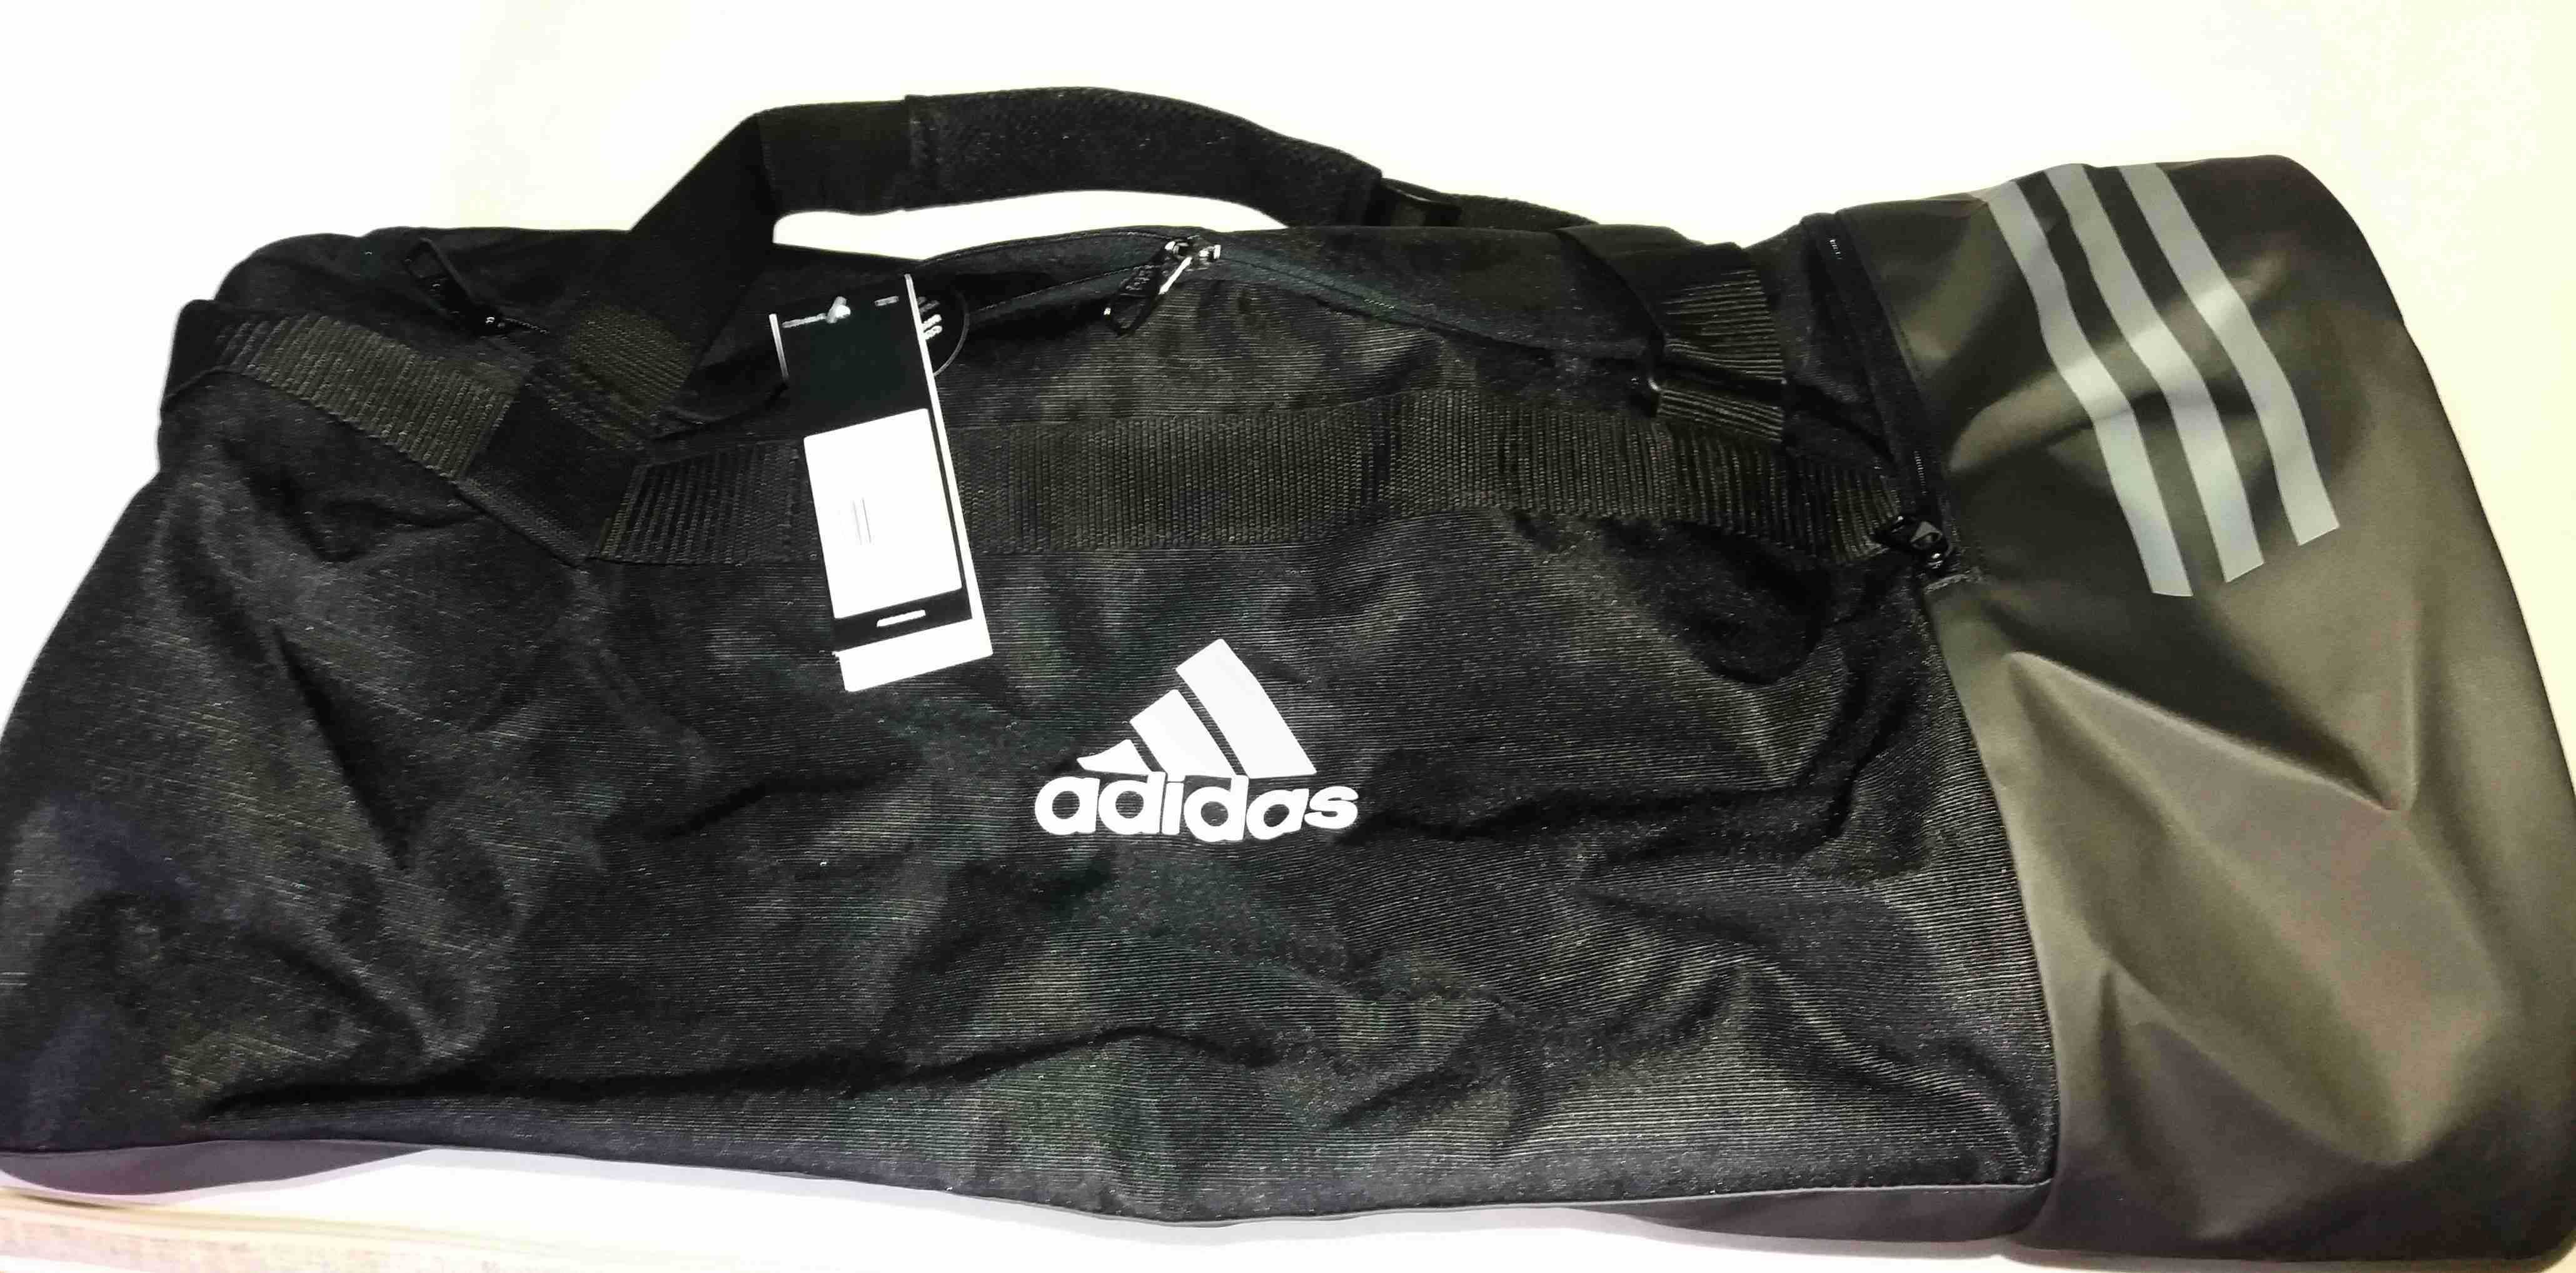 Duża torba sportowa Adidas 3S CVRT DUF L